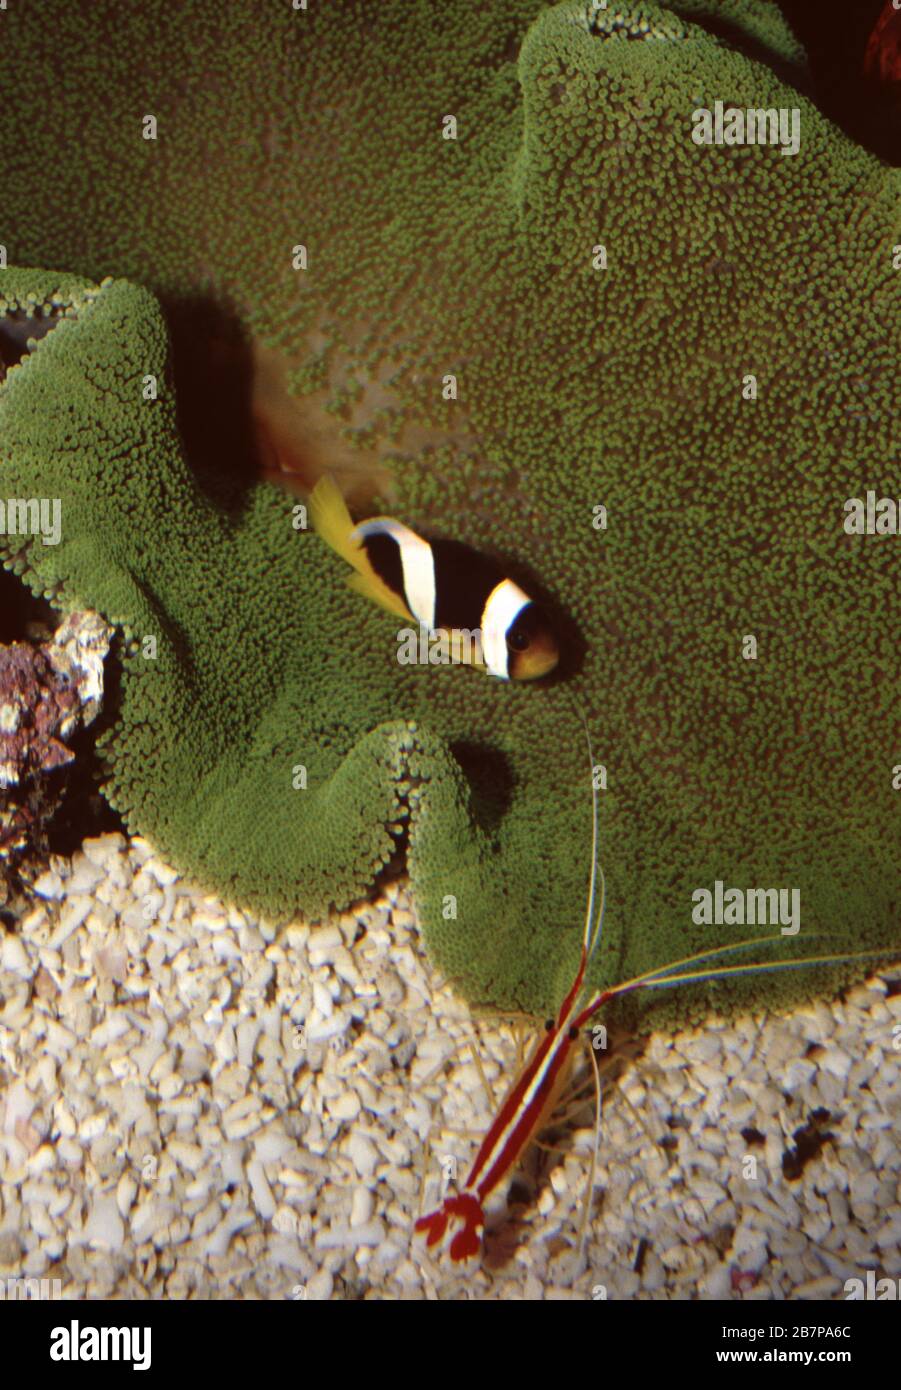 Carpet anemone, Stichodactyla haddoni Stock Photo